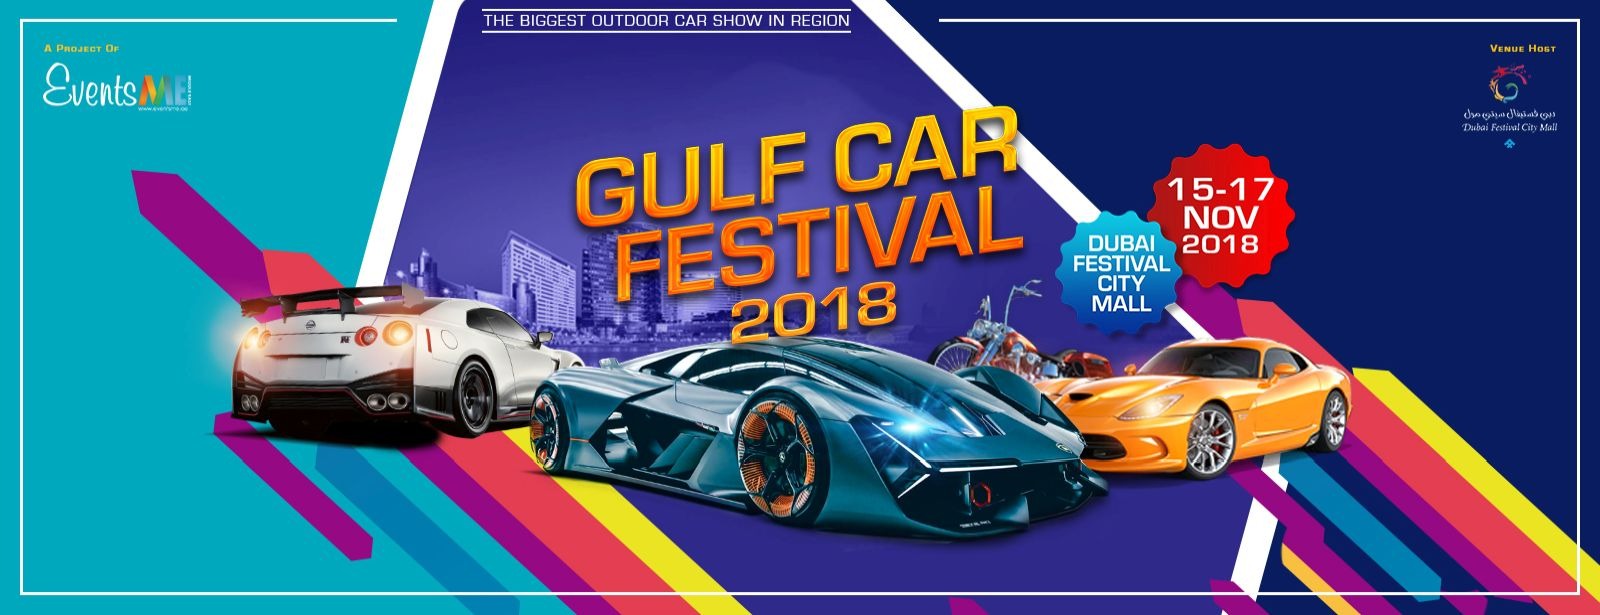 Gulf Car Festival 2018 - Coming Soon in UAE